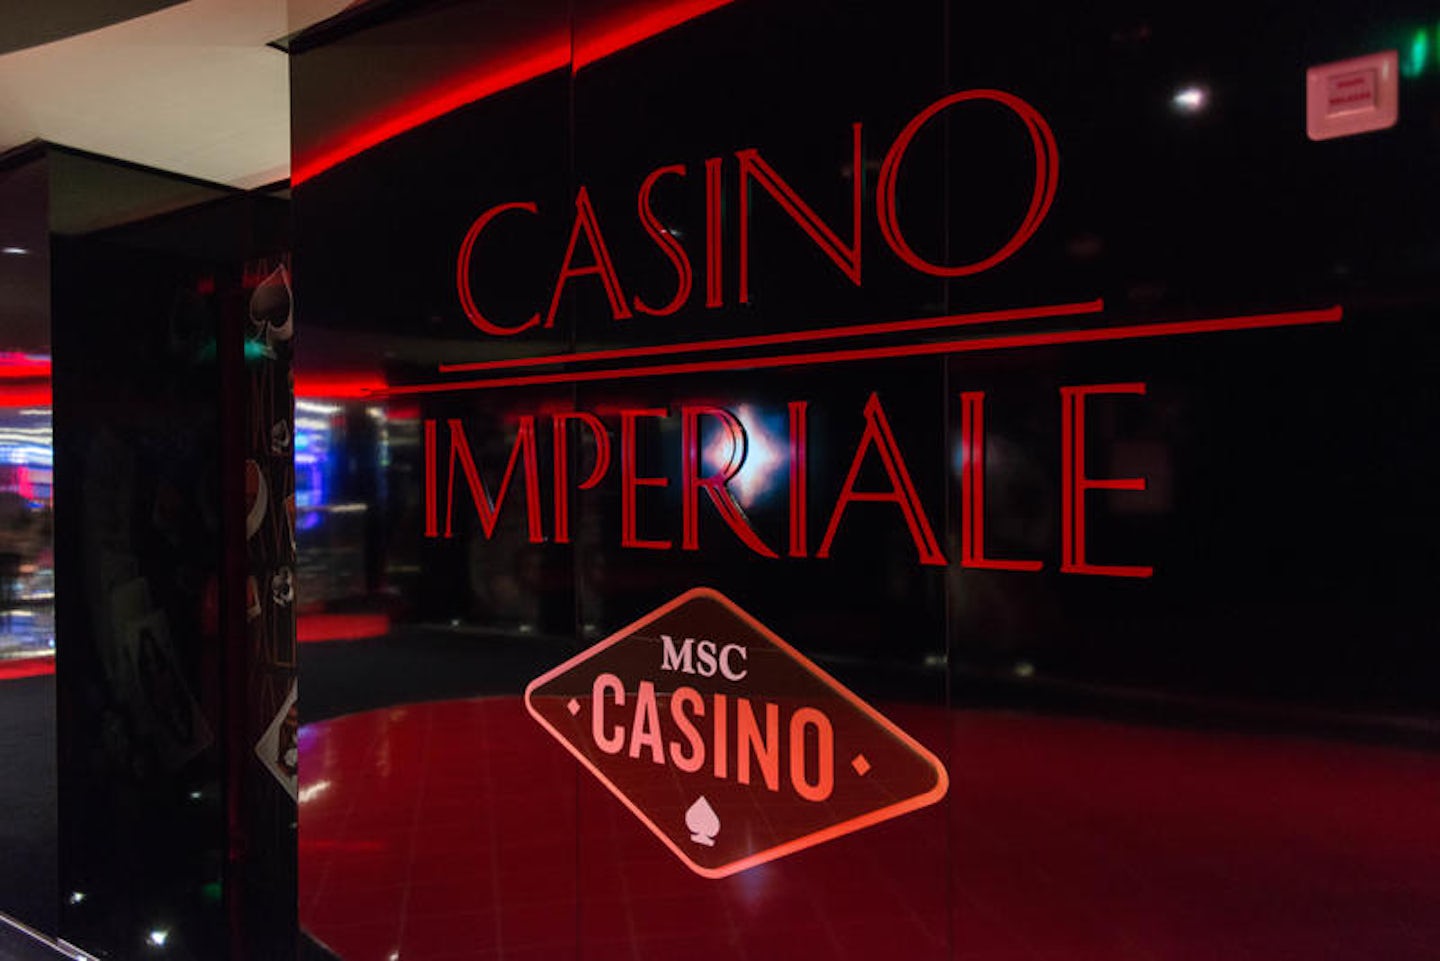 Casino Imperiale on MSC Meraviglia